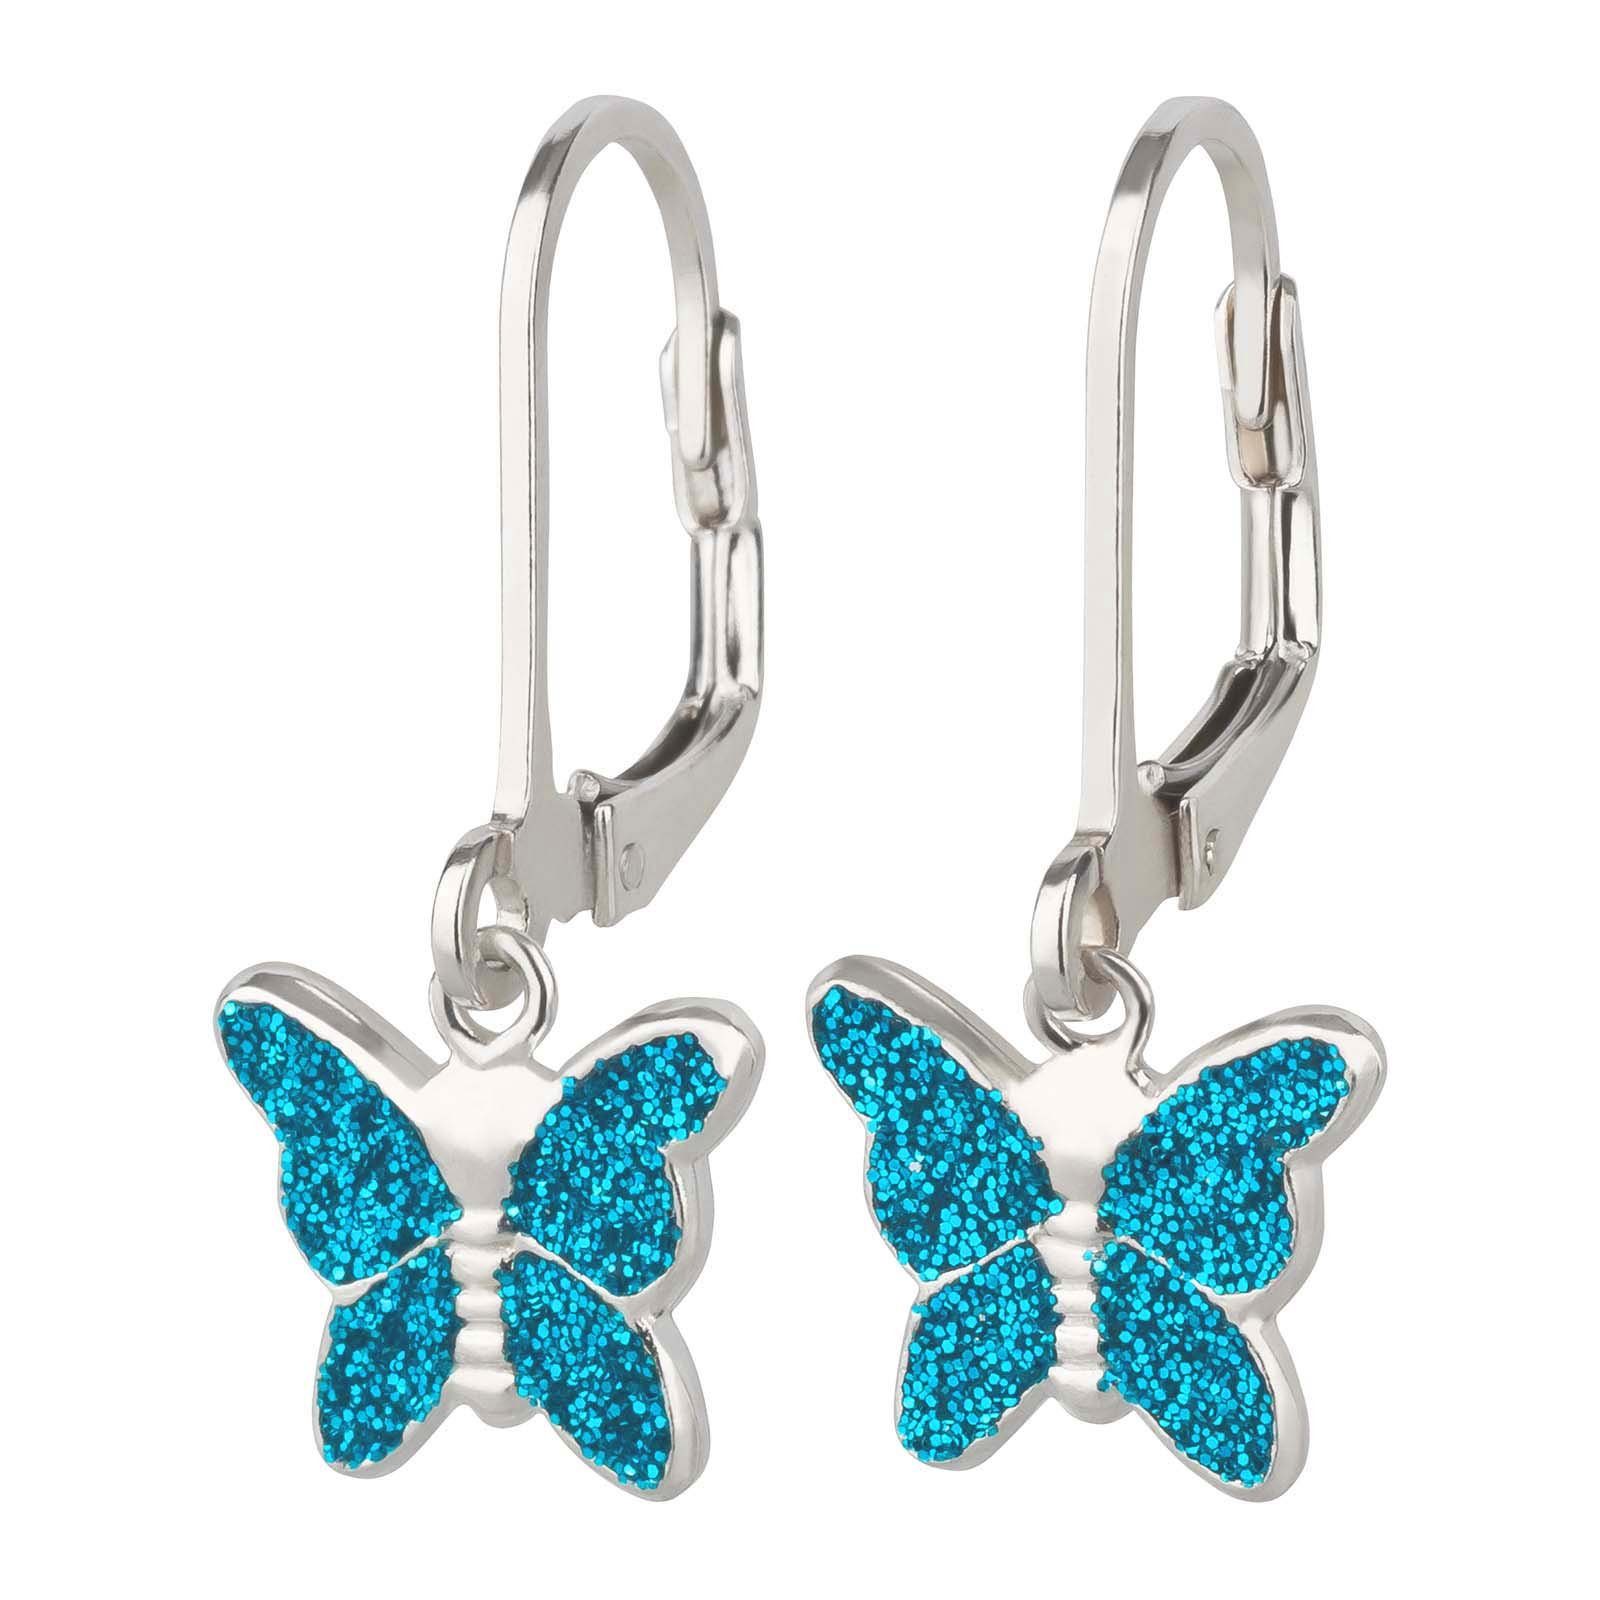 Mädchen Kinder Ohrringe Hellblau Paar Schmetterling Silber, schmuck23 Kinderschmuck Ohrhänger 925 Geschenk